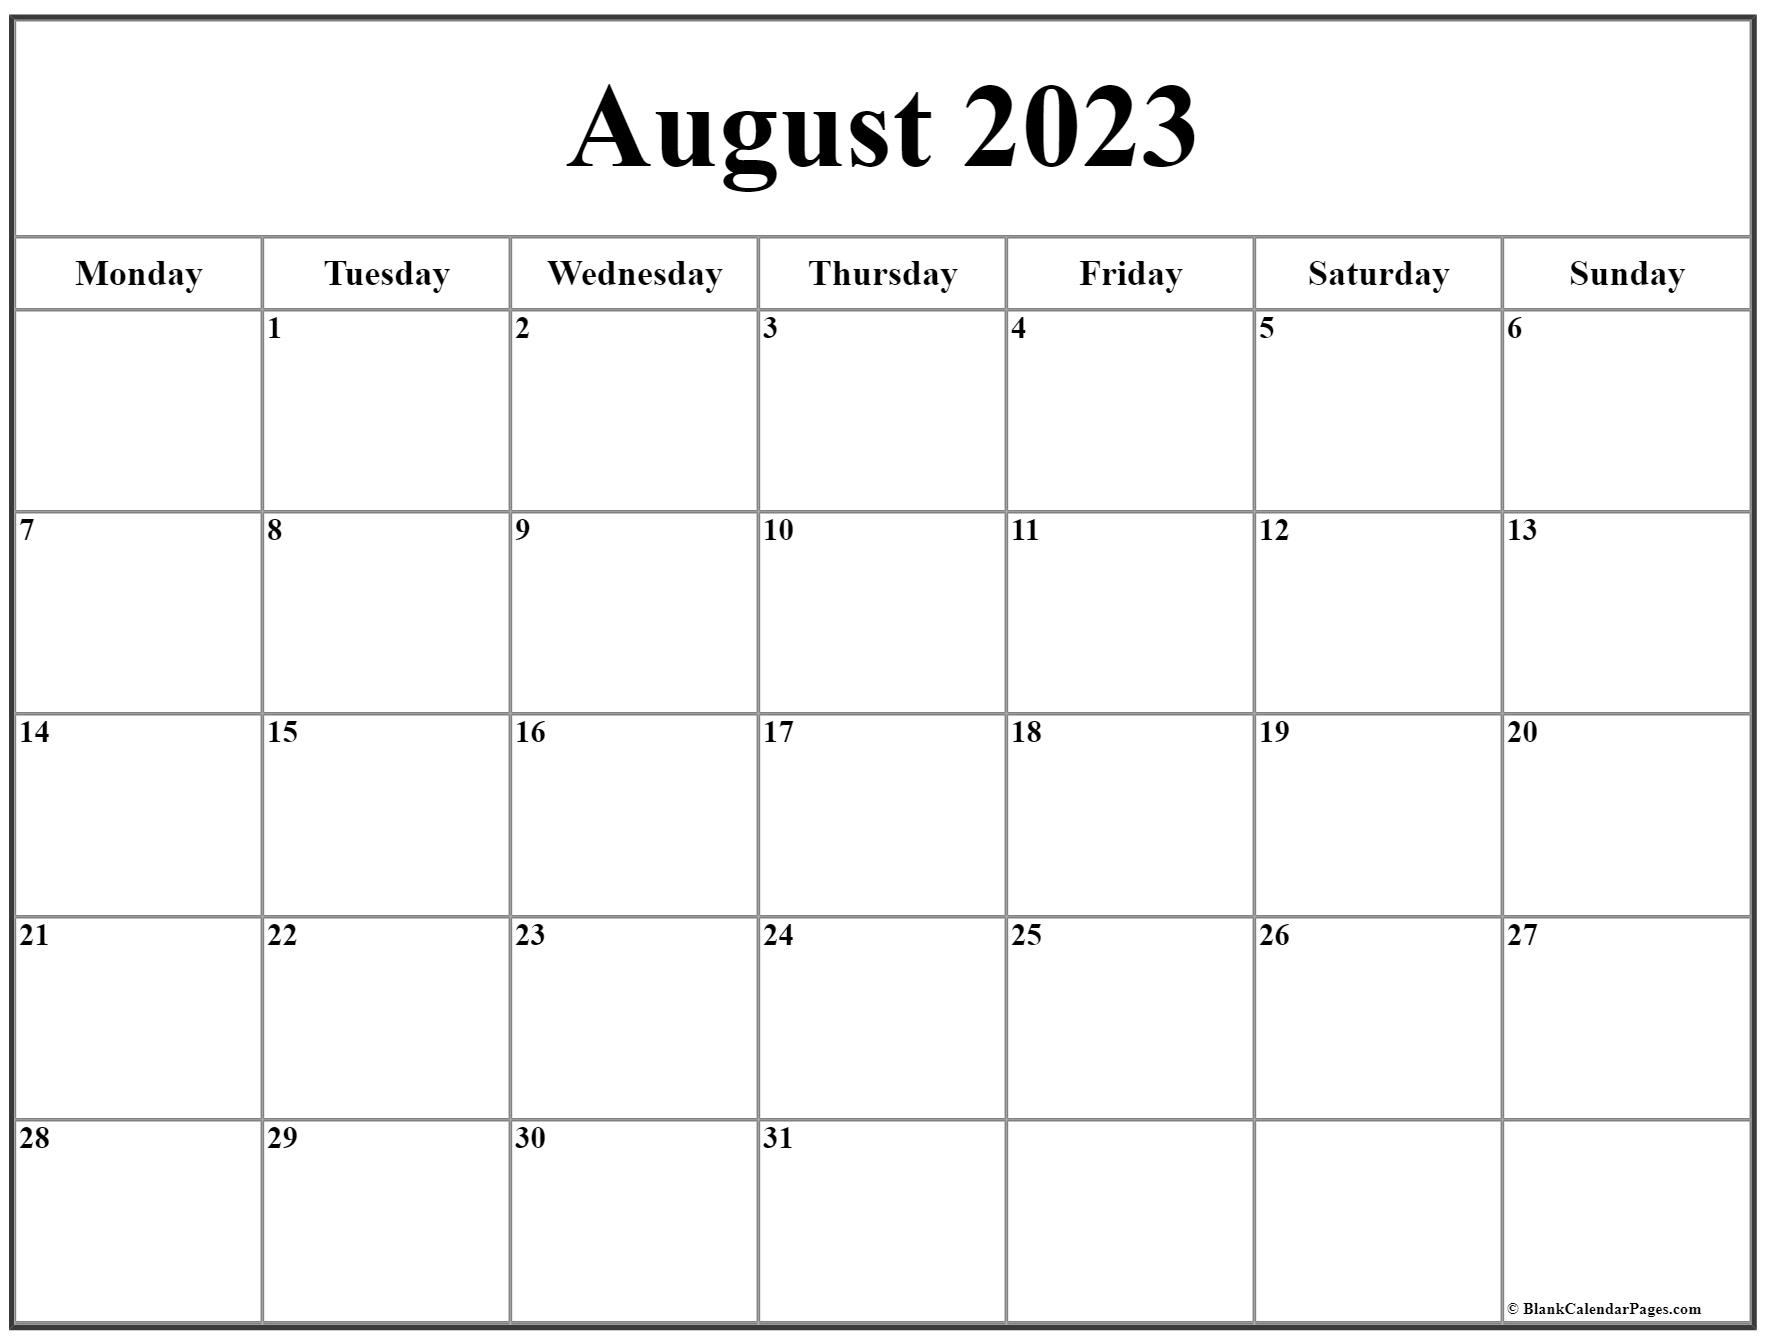 Август 2023 часы. Календарь август 2022. Календаравгуст 2022 года. Календарь июнь 2022. Календарь на август 2022 года.